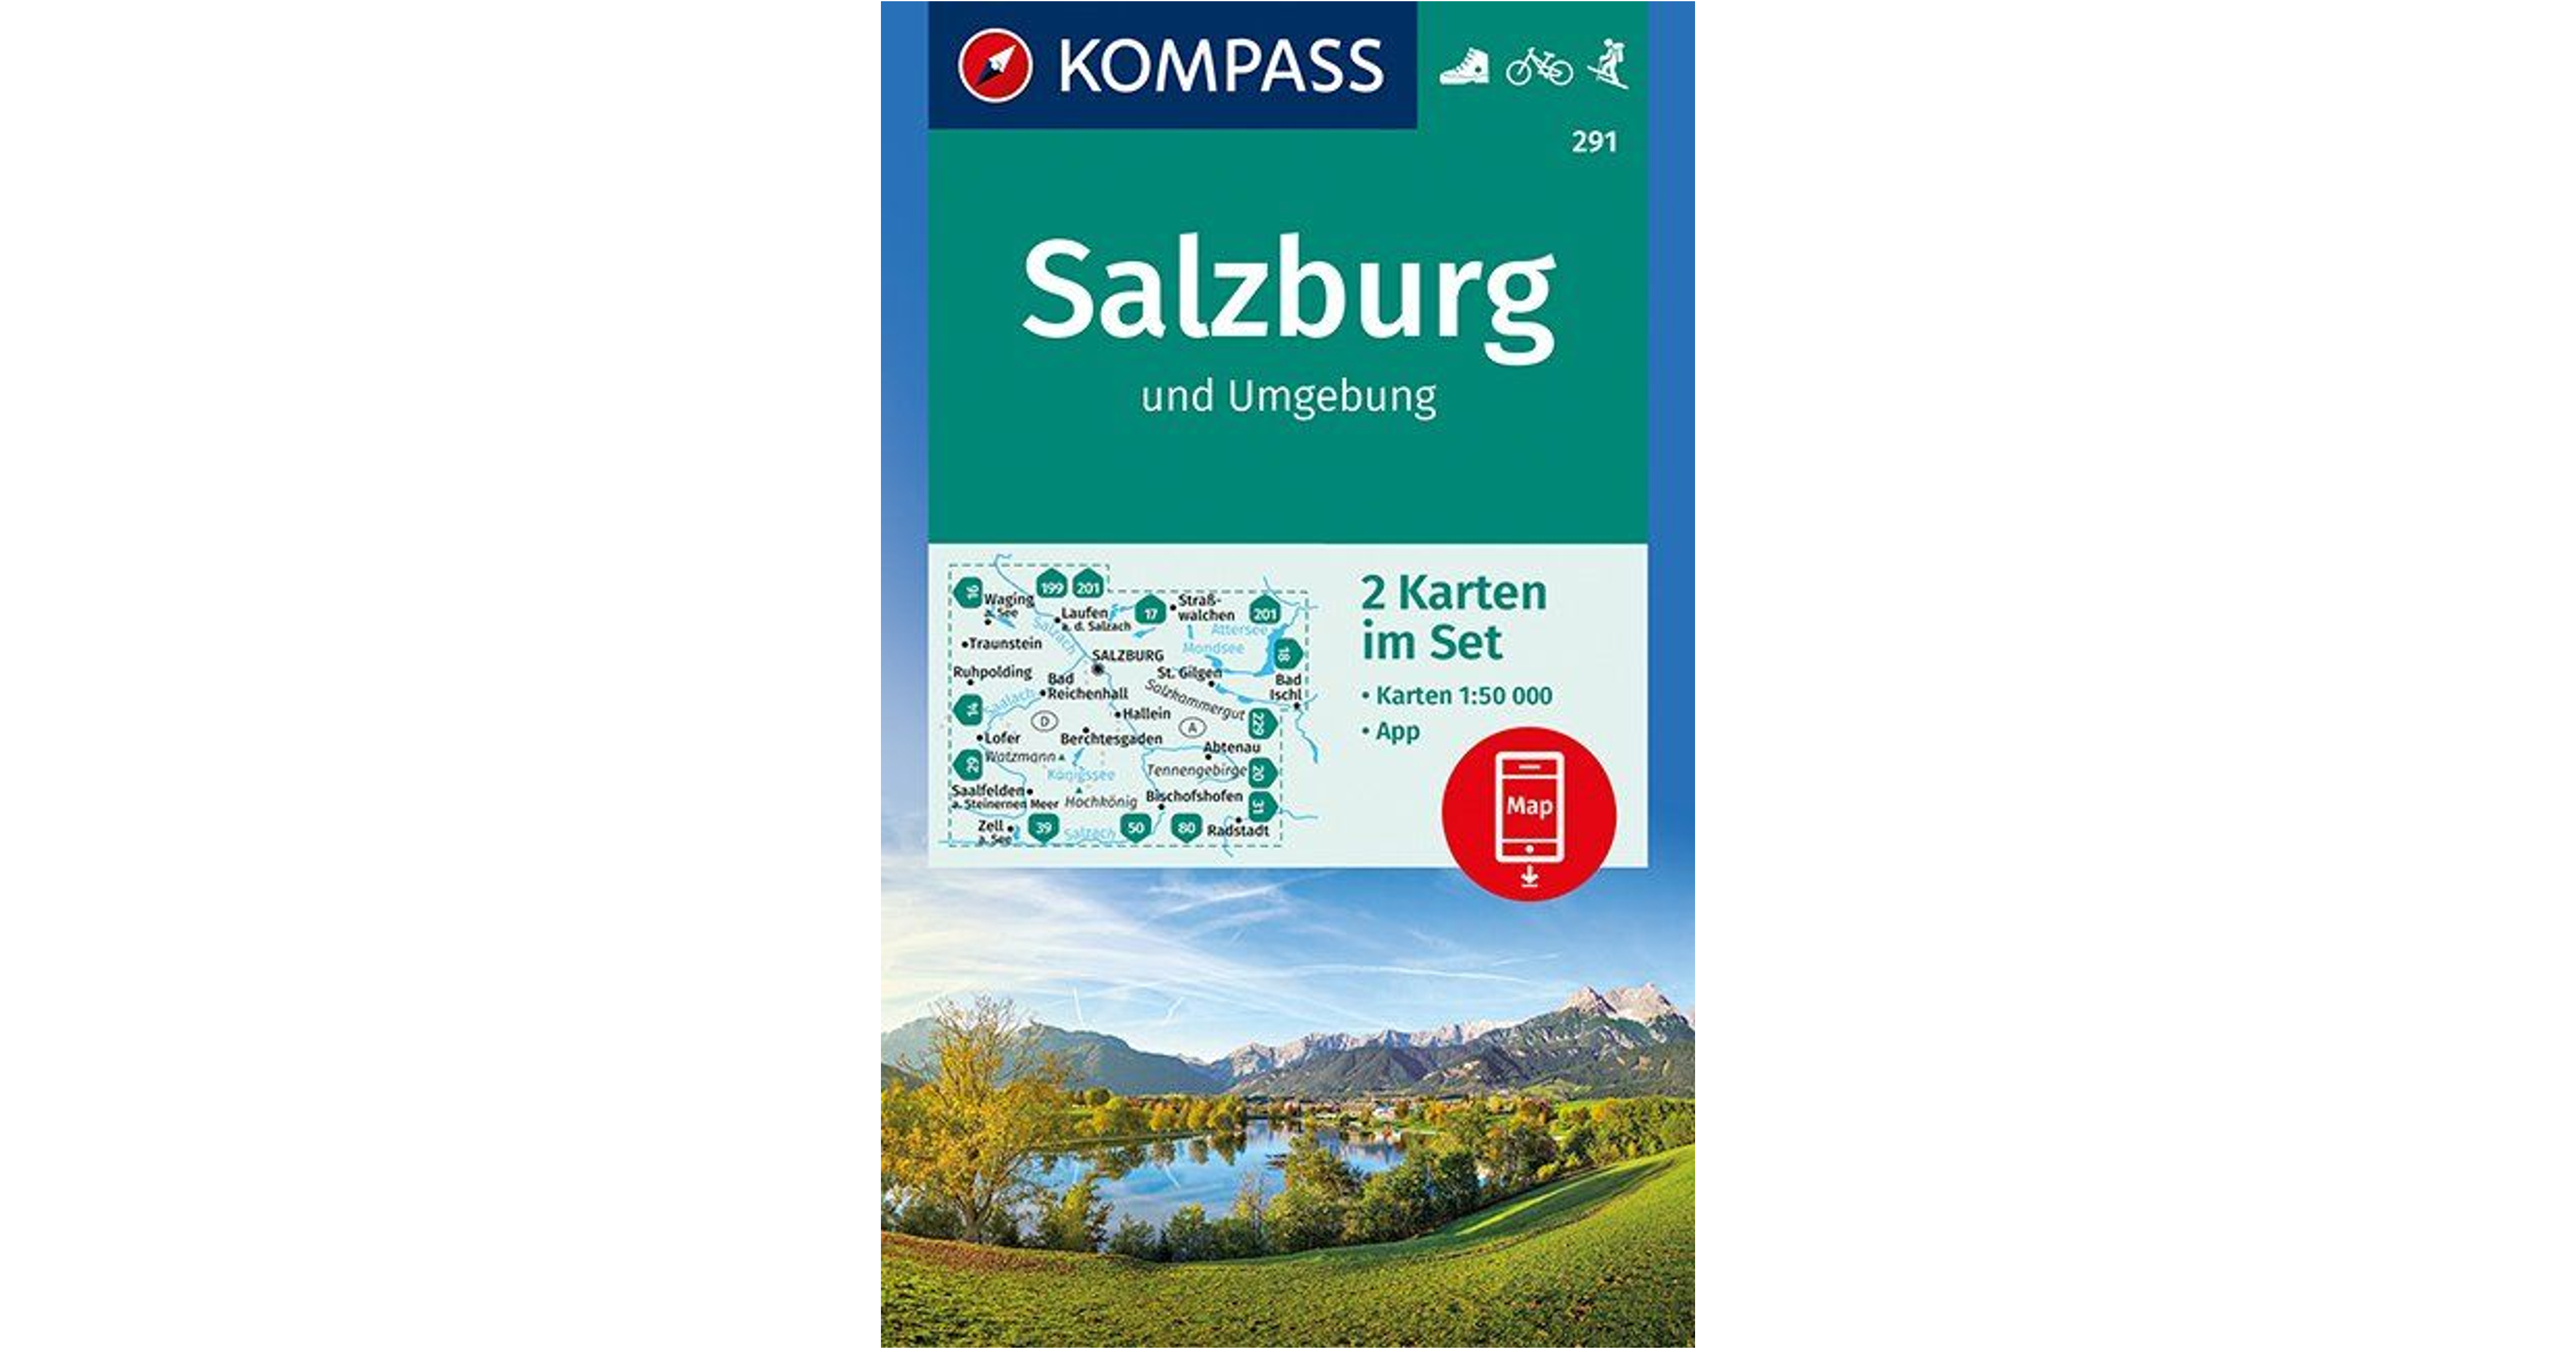 salzburg és környéke nevezetességei képek